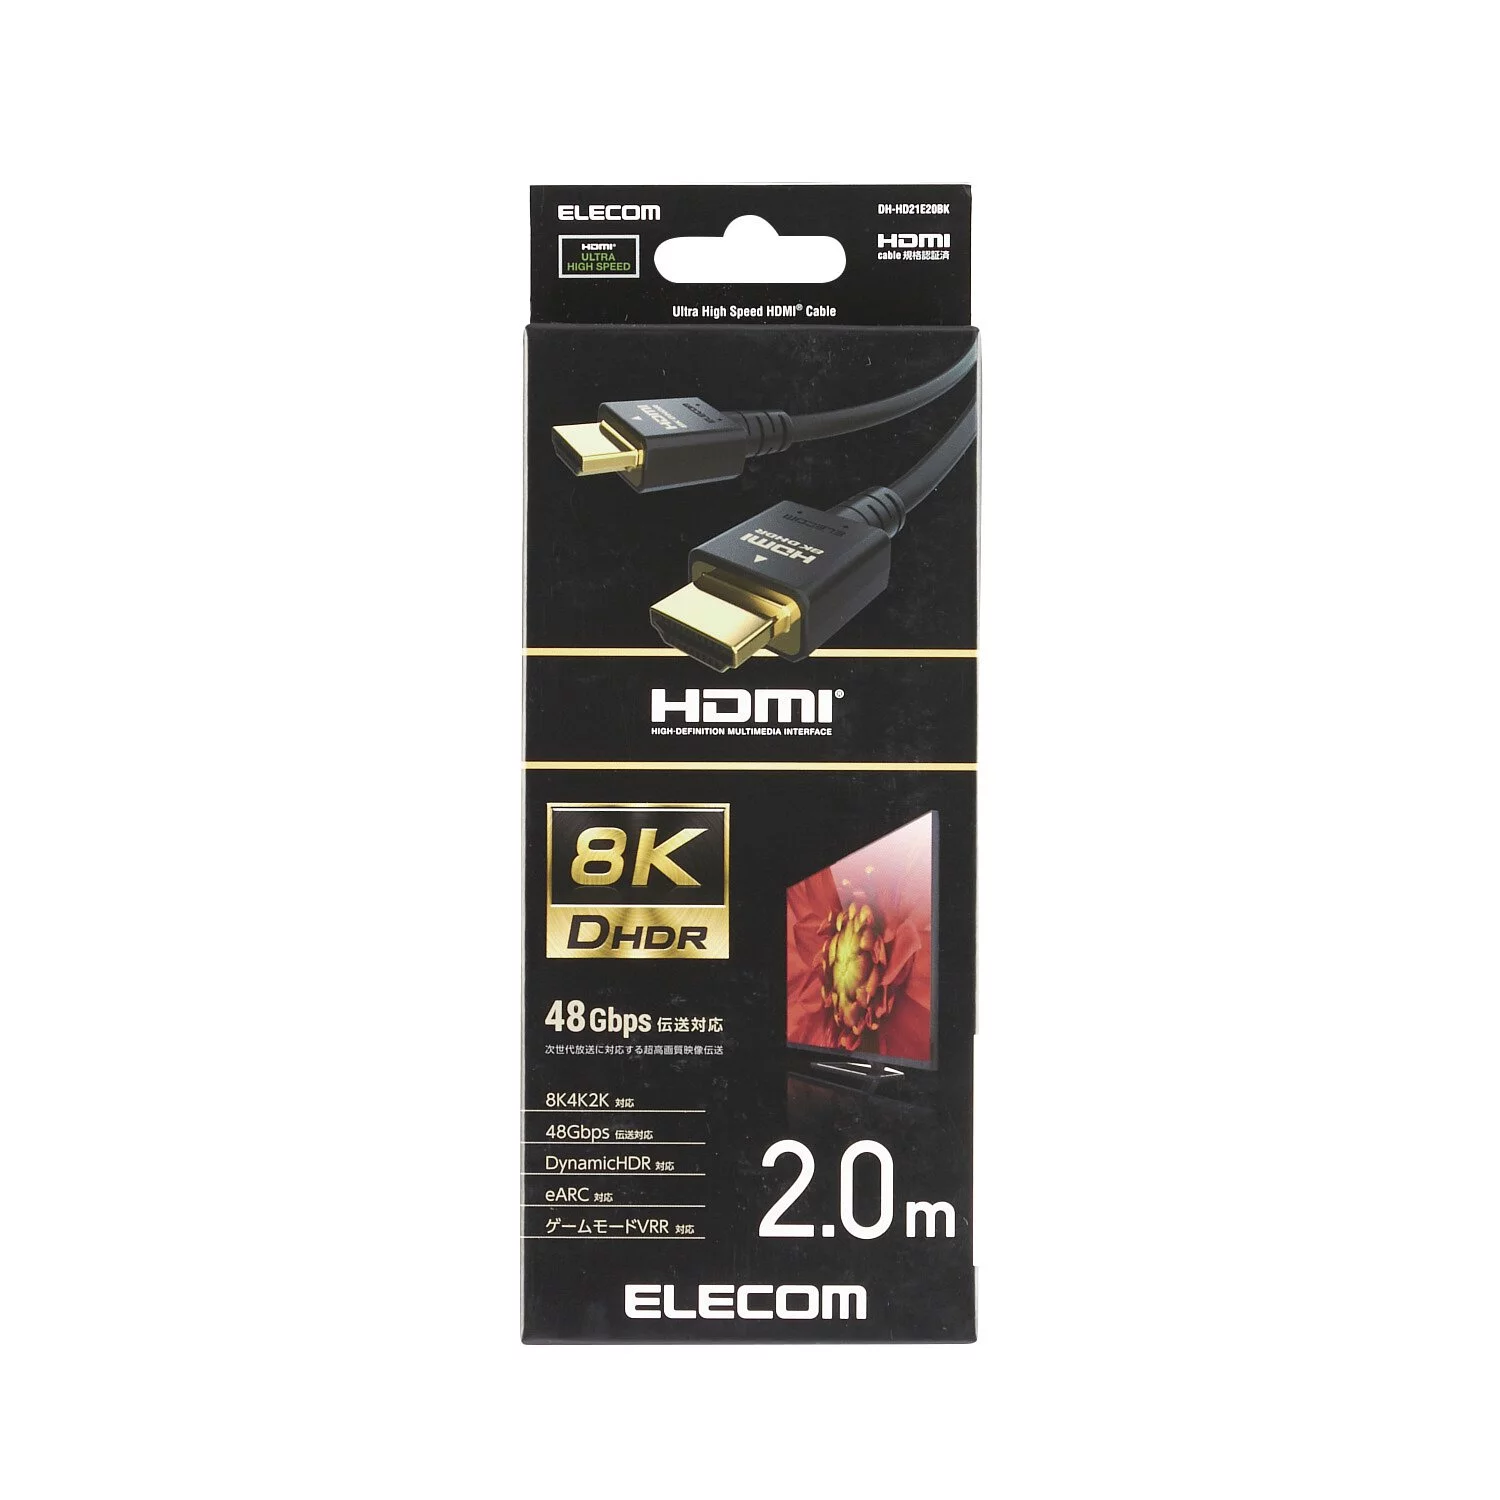 Elecom 2m 8K高清 Ultra High Speed HDMI線 #DH-HD21E20BK